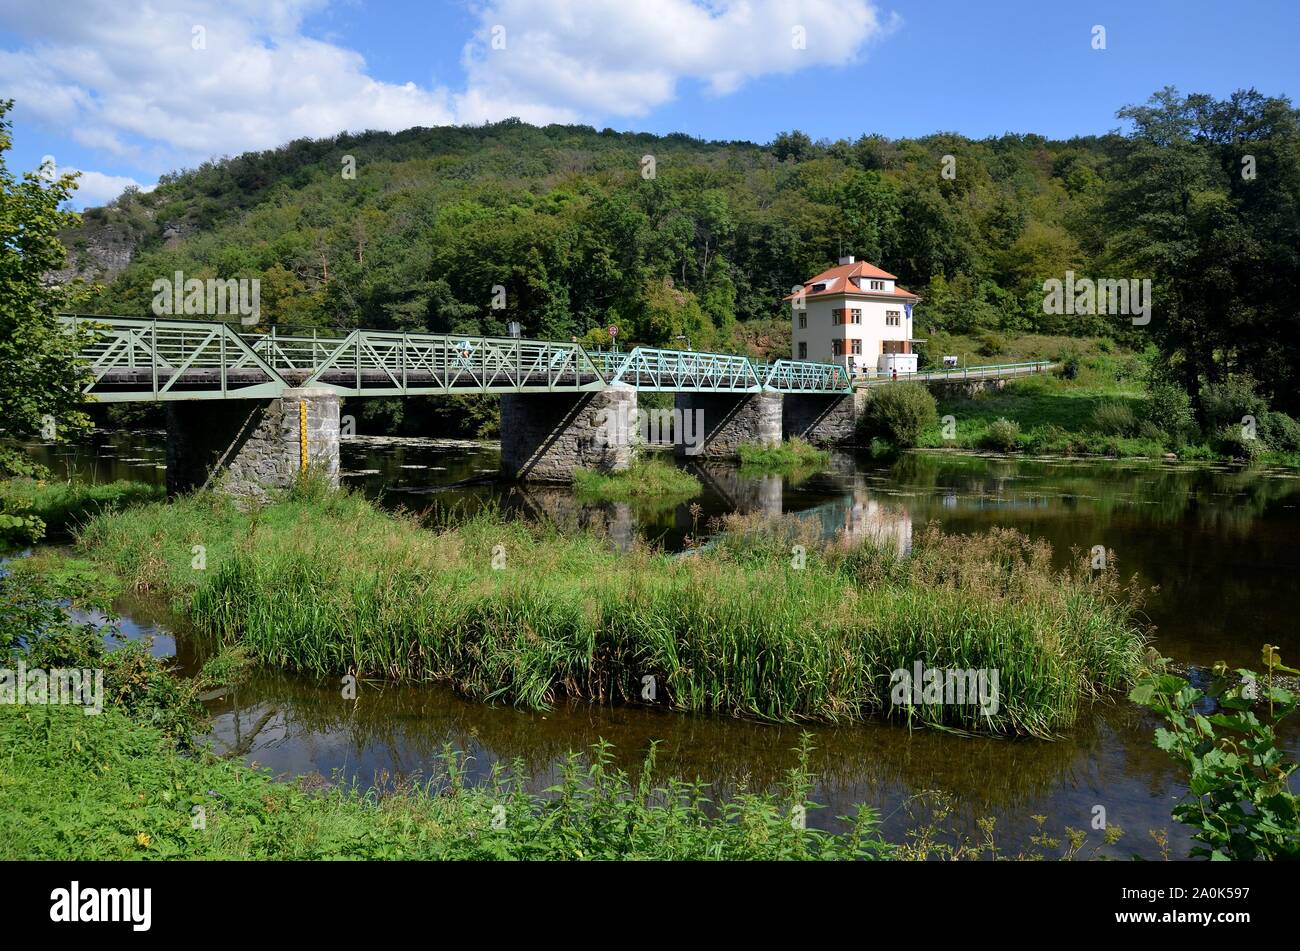 Hardegg Grenzstadt im Waldviertel, Österreich, an der Thaya gegenüber dem Cizov tschechischen,Thaya-Nationalpark, Blick über Brücke nach Tschechien Foto Stock